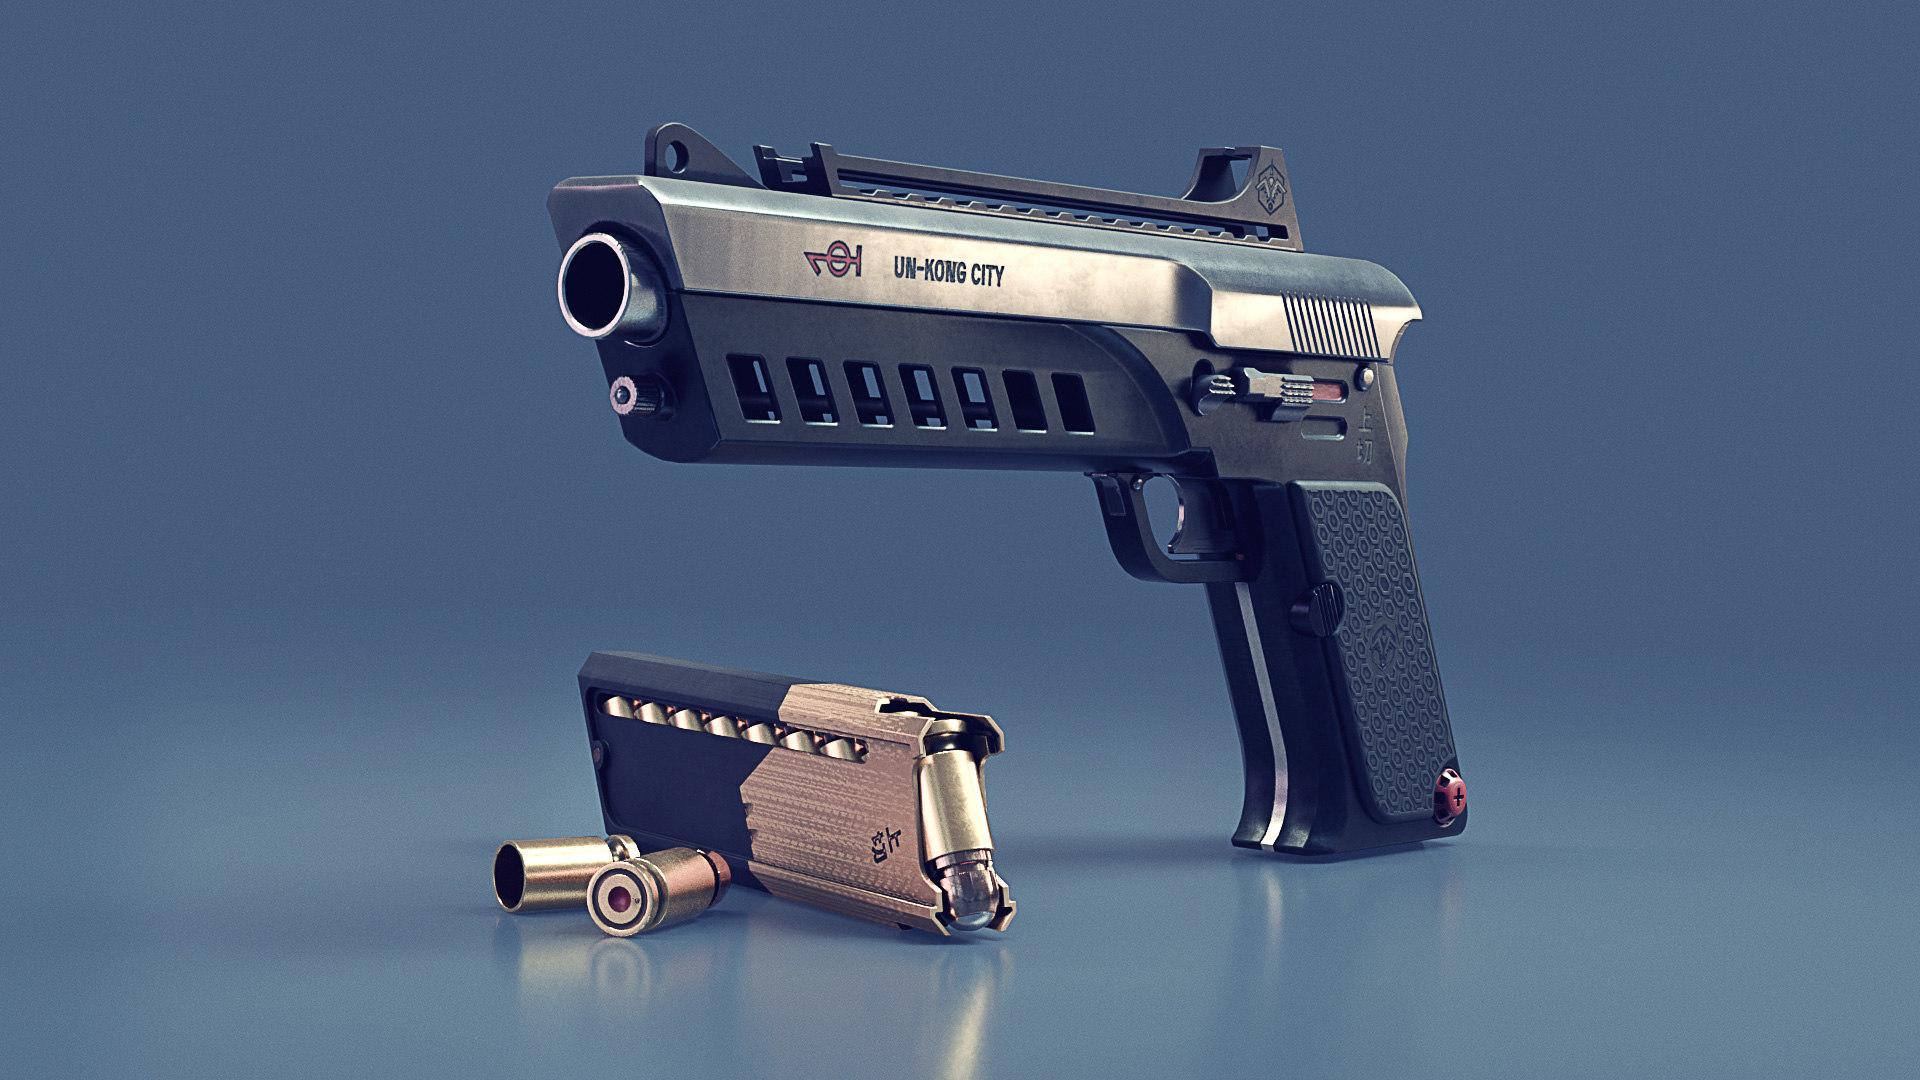 Cyberpunk gun 3d model фото 77